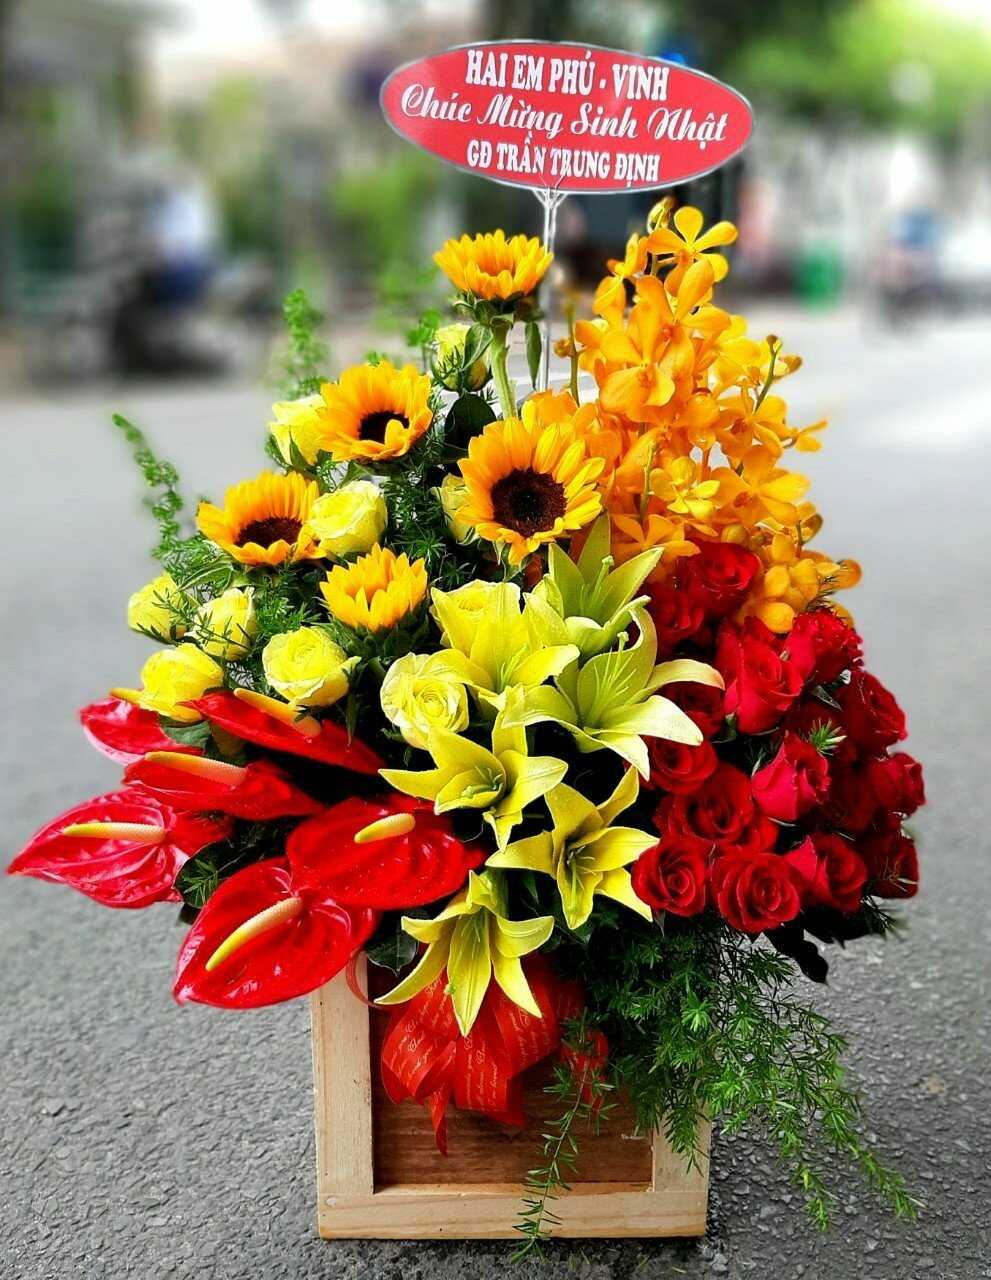 Shop hoa tươi huyện Thạch Thất, Hà Nội cam kết mẫu thực tế và hoa gửi đi giống nhau 100%